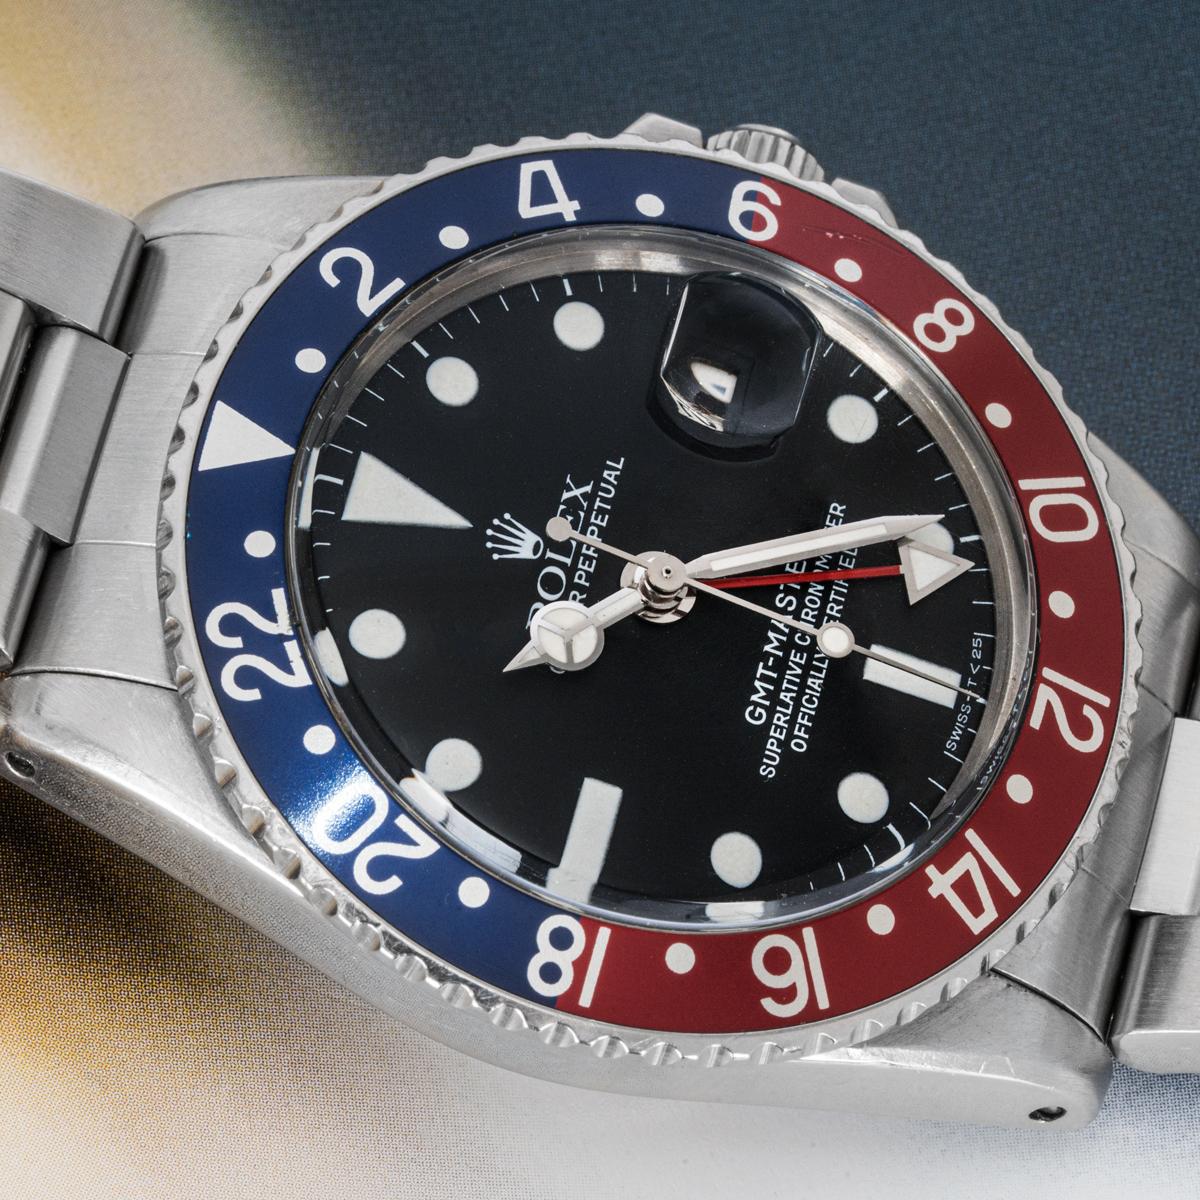 Une GMT-Master vintage de 40 mm en acier inoxydable de Rolex. Elle est dotée d'un cadran noir mat, d'un guichet de date et d'une lunette tournante bidirectionnelle en acier inoxydable avec l'emblématique insert bleu et rouge de la lunette 